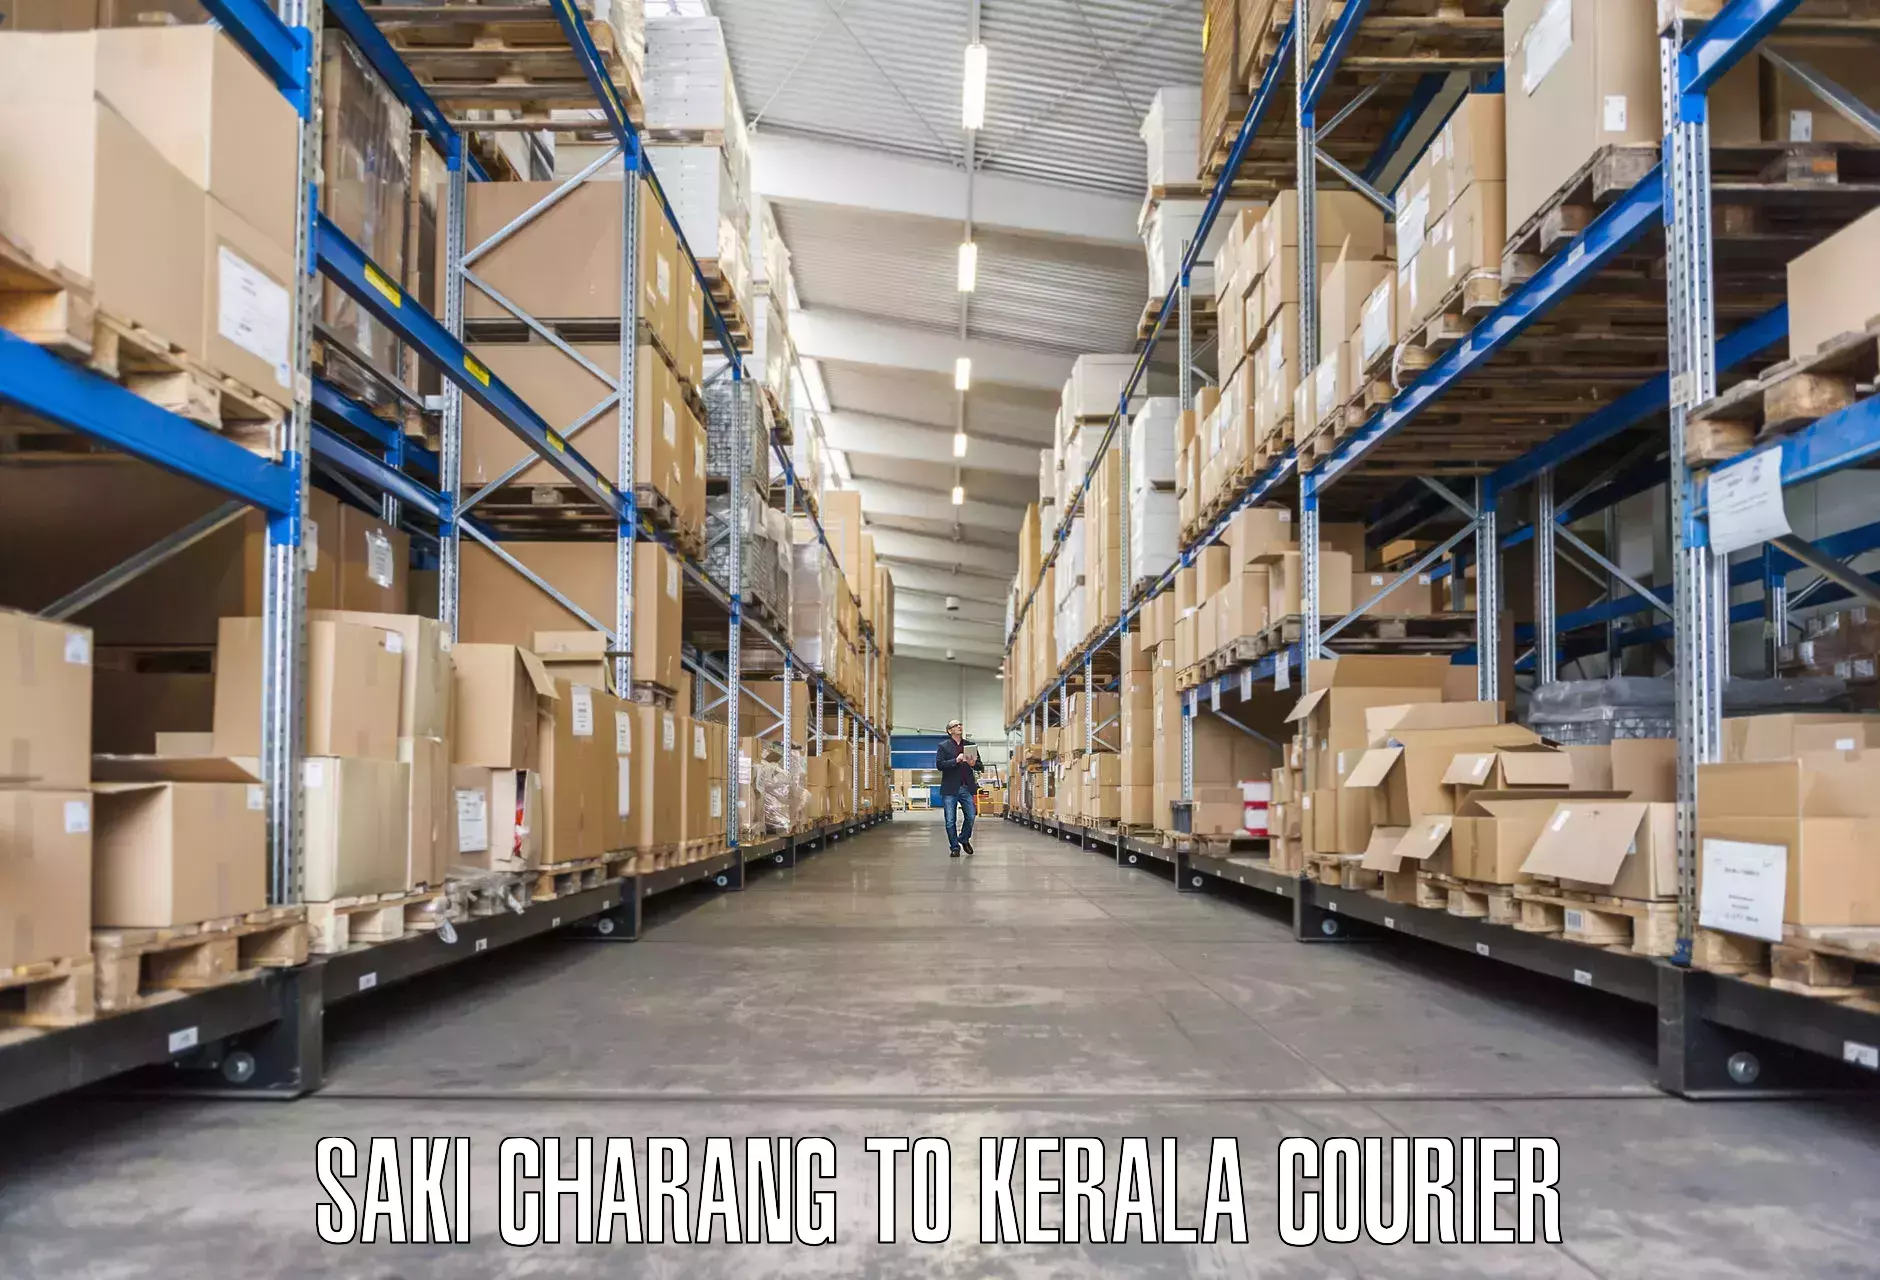 Moving and storage services Saki Charang to Kalanjoor